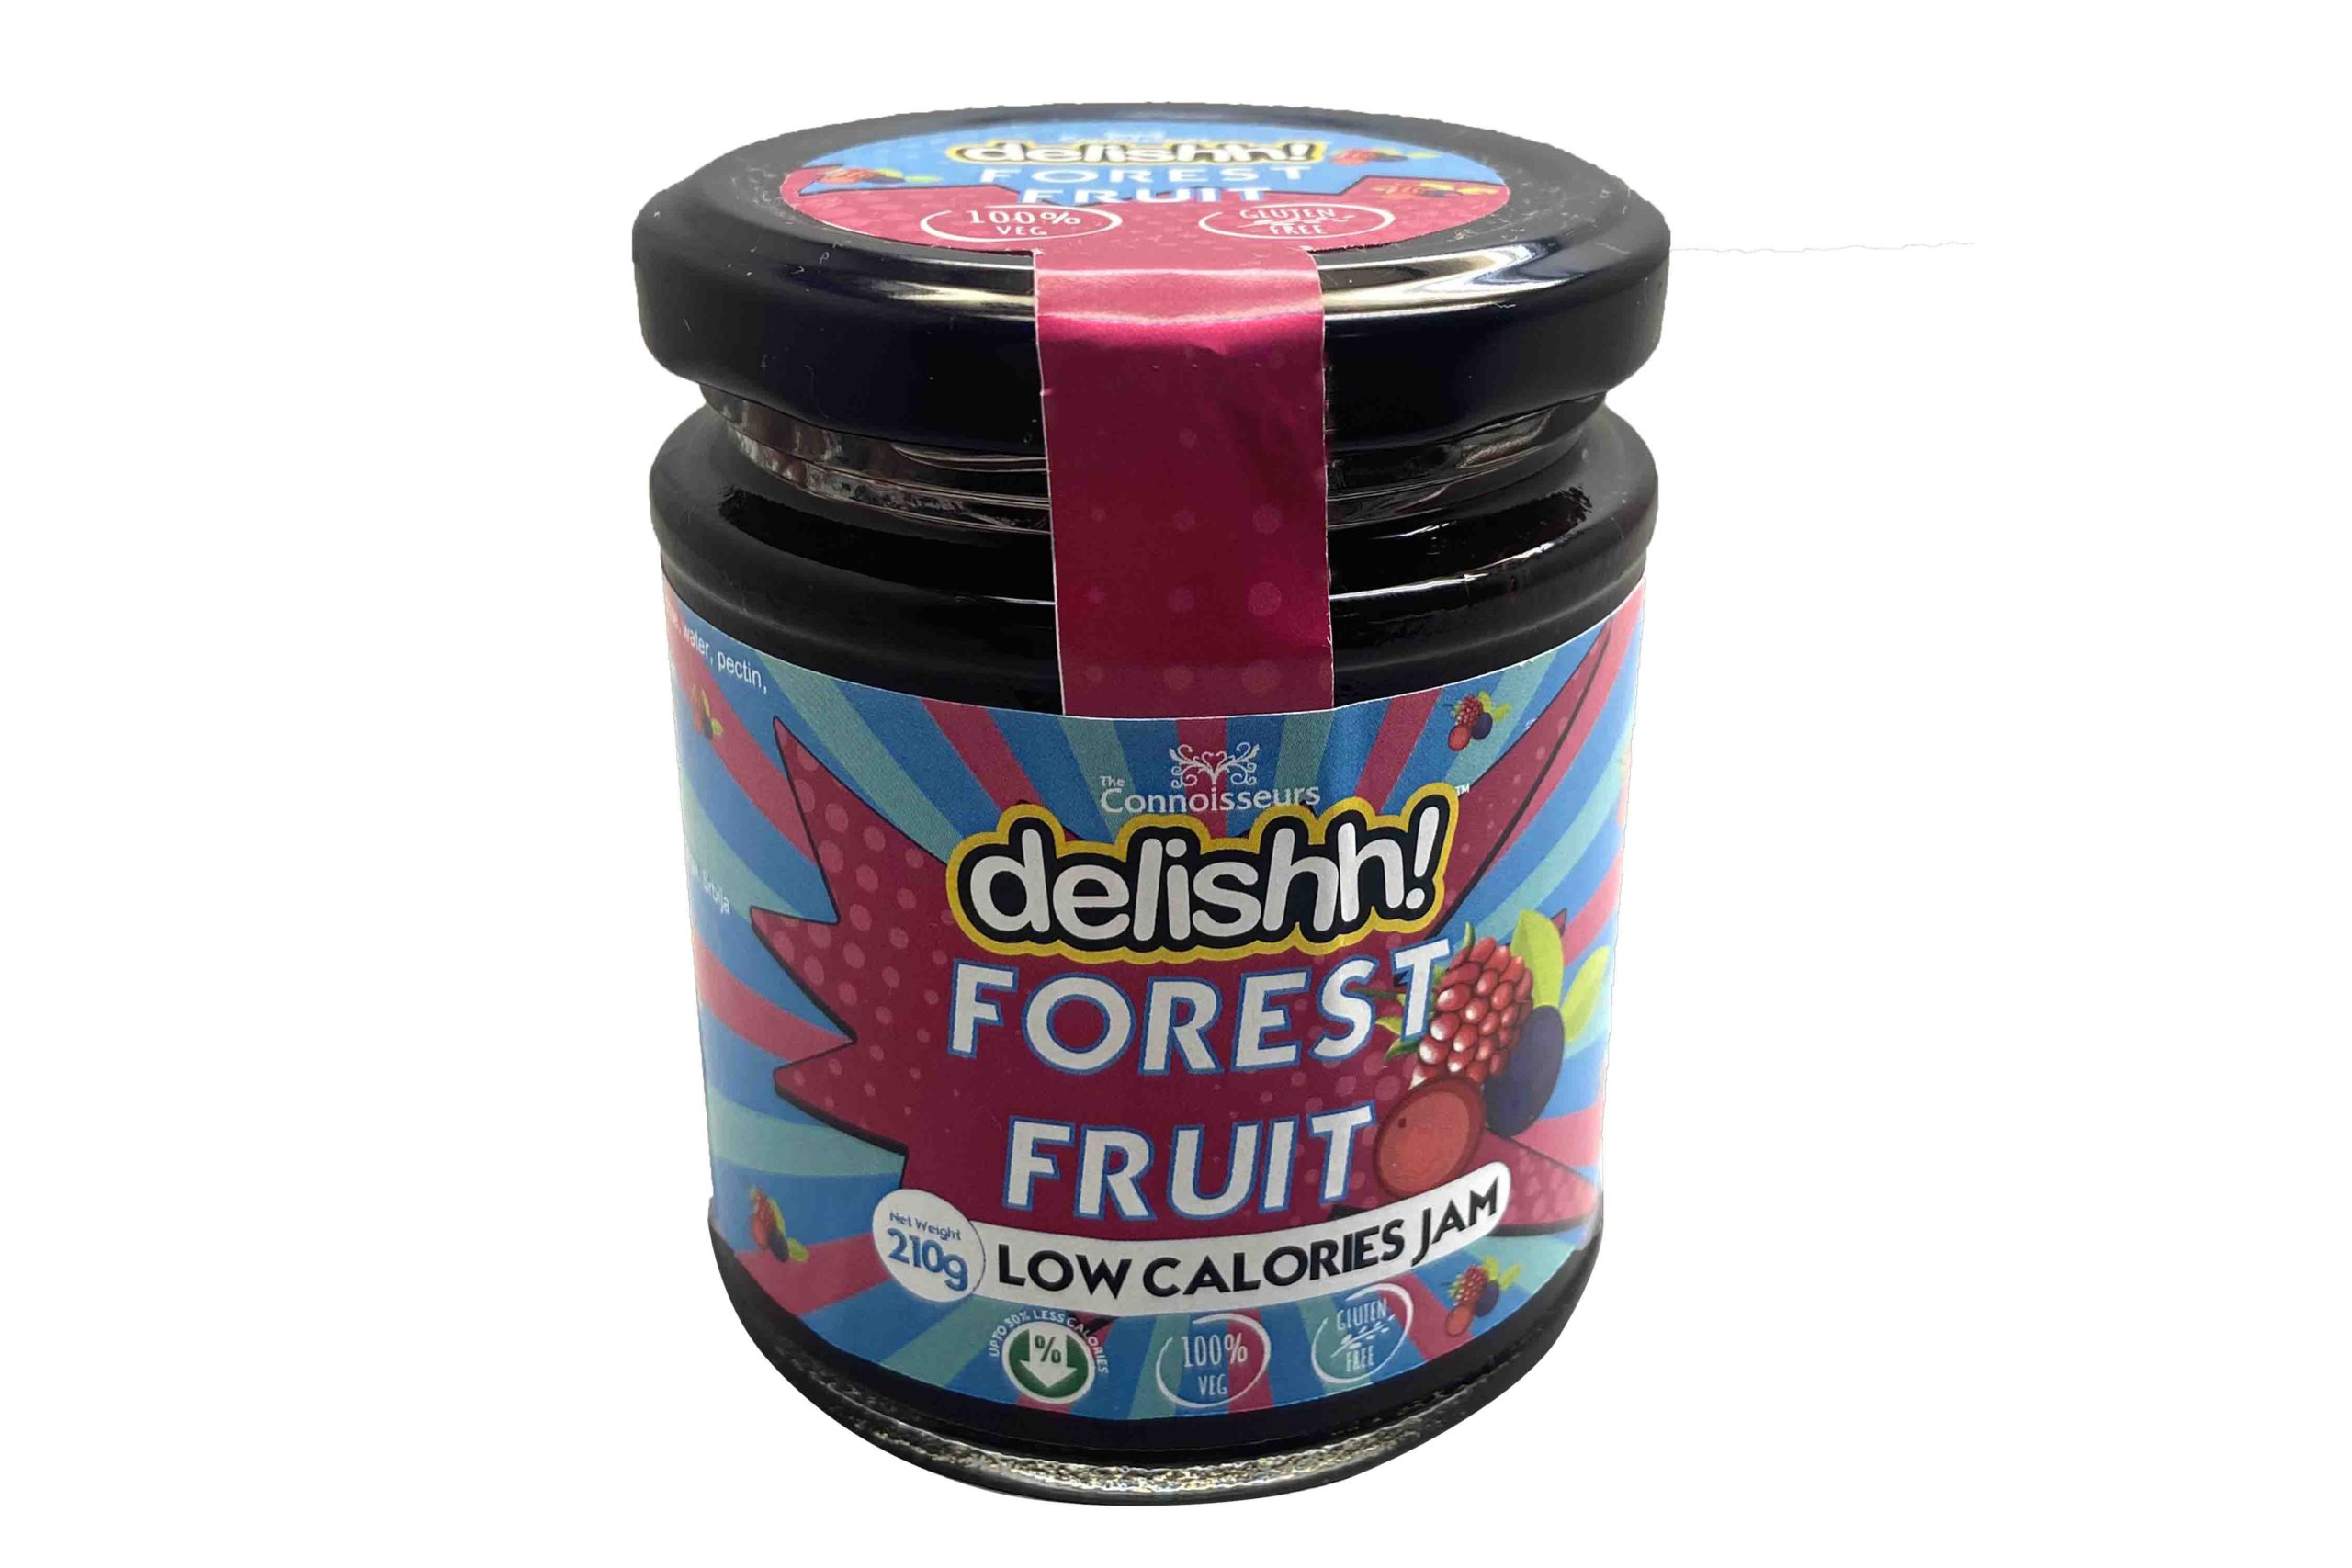 Delishh Forest Fruit Jam